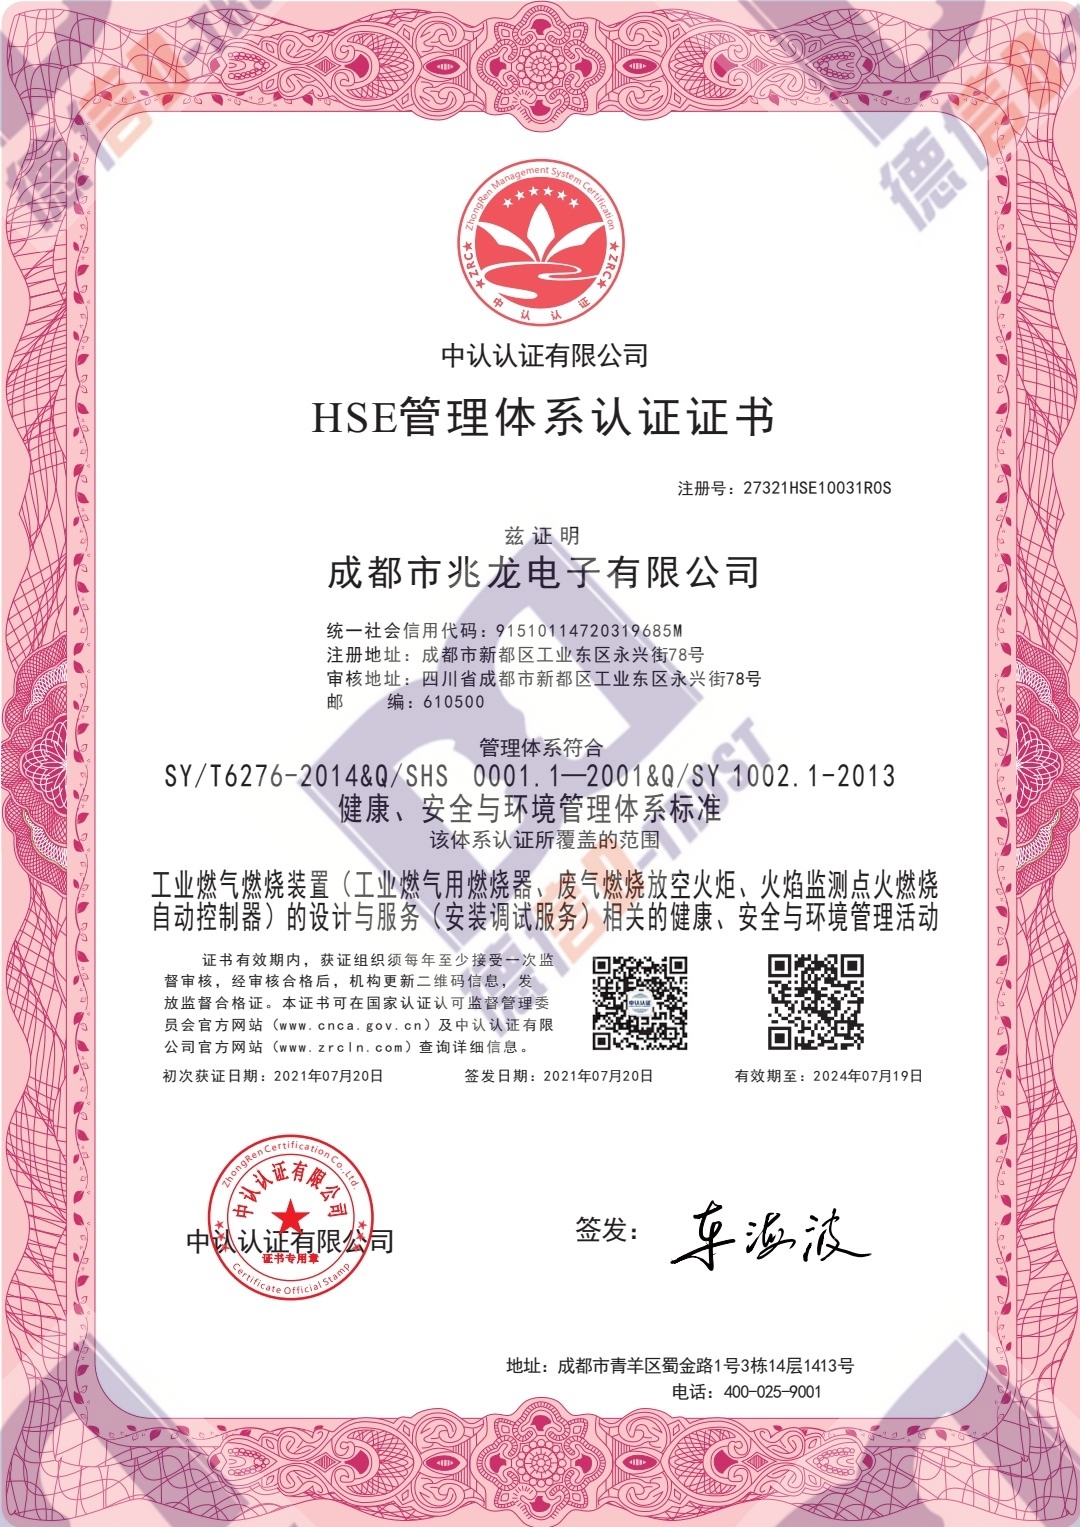 恭喜成都市兆龙电子有限公司顺利通过《HSE管理体系认证证书》